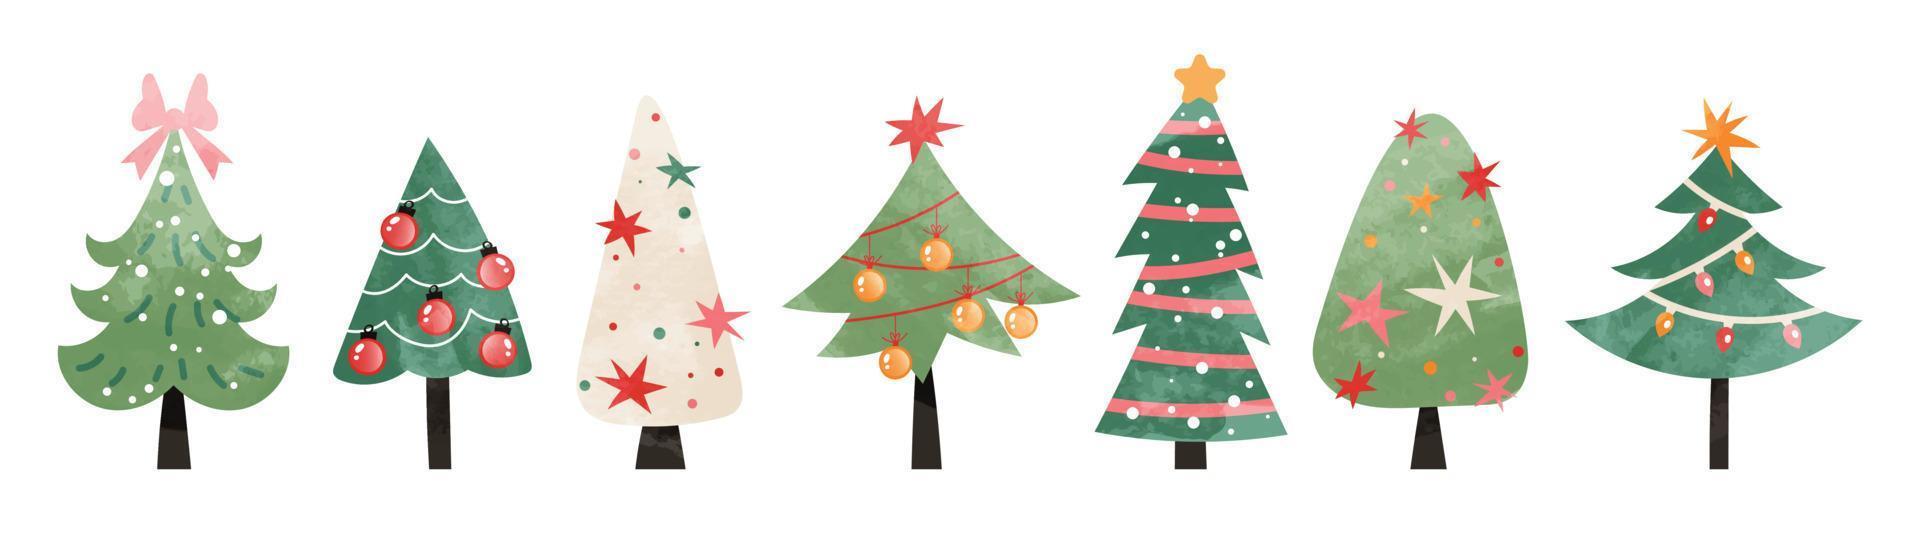 conjunto de ilustração vetorial de árvore de natal em aquarela. coleção de árvores decorativas de natal decorativas desenhadas à mão isoladas no fundo branco. design para adesivo, decoração, cartão, pôster, arte. vetor